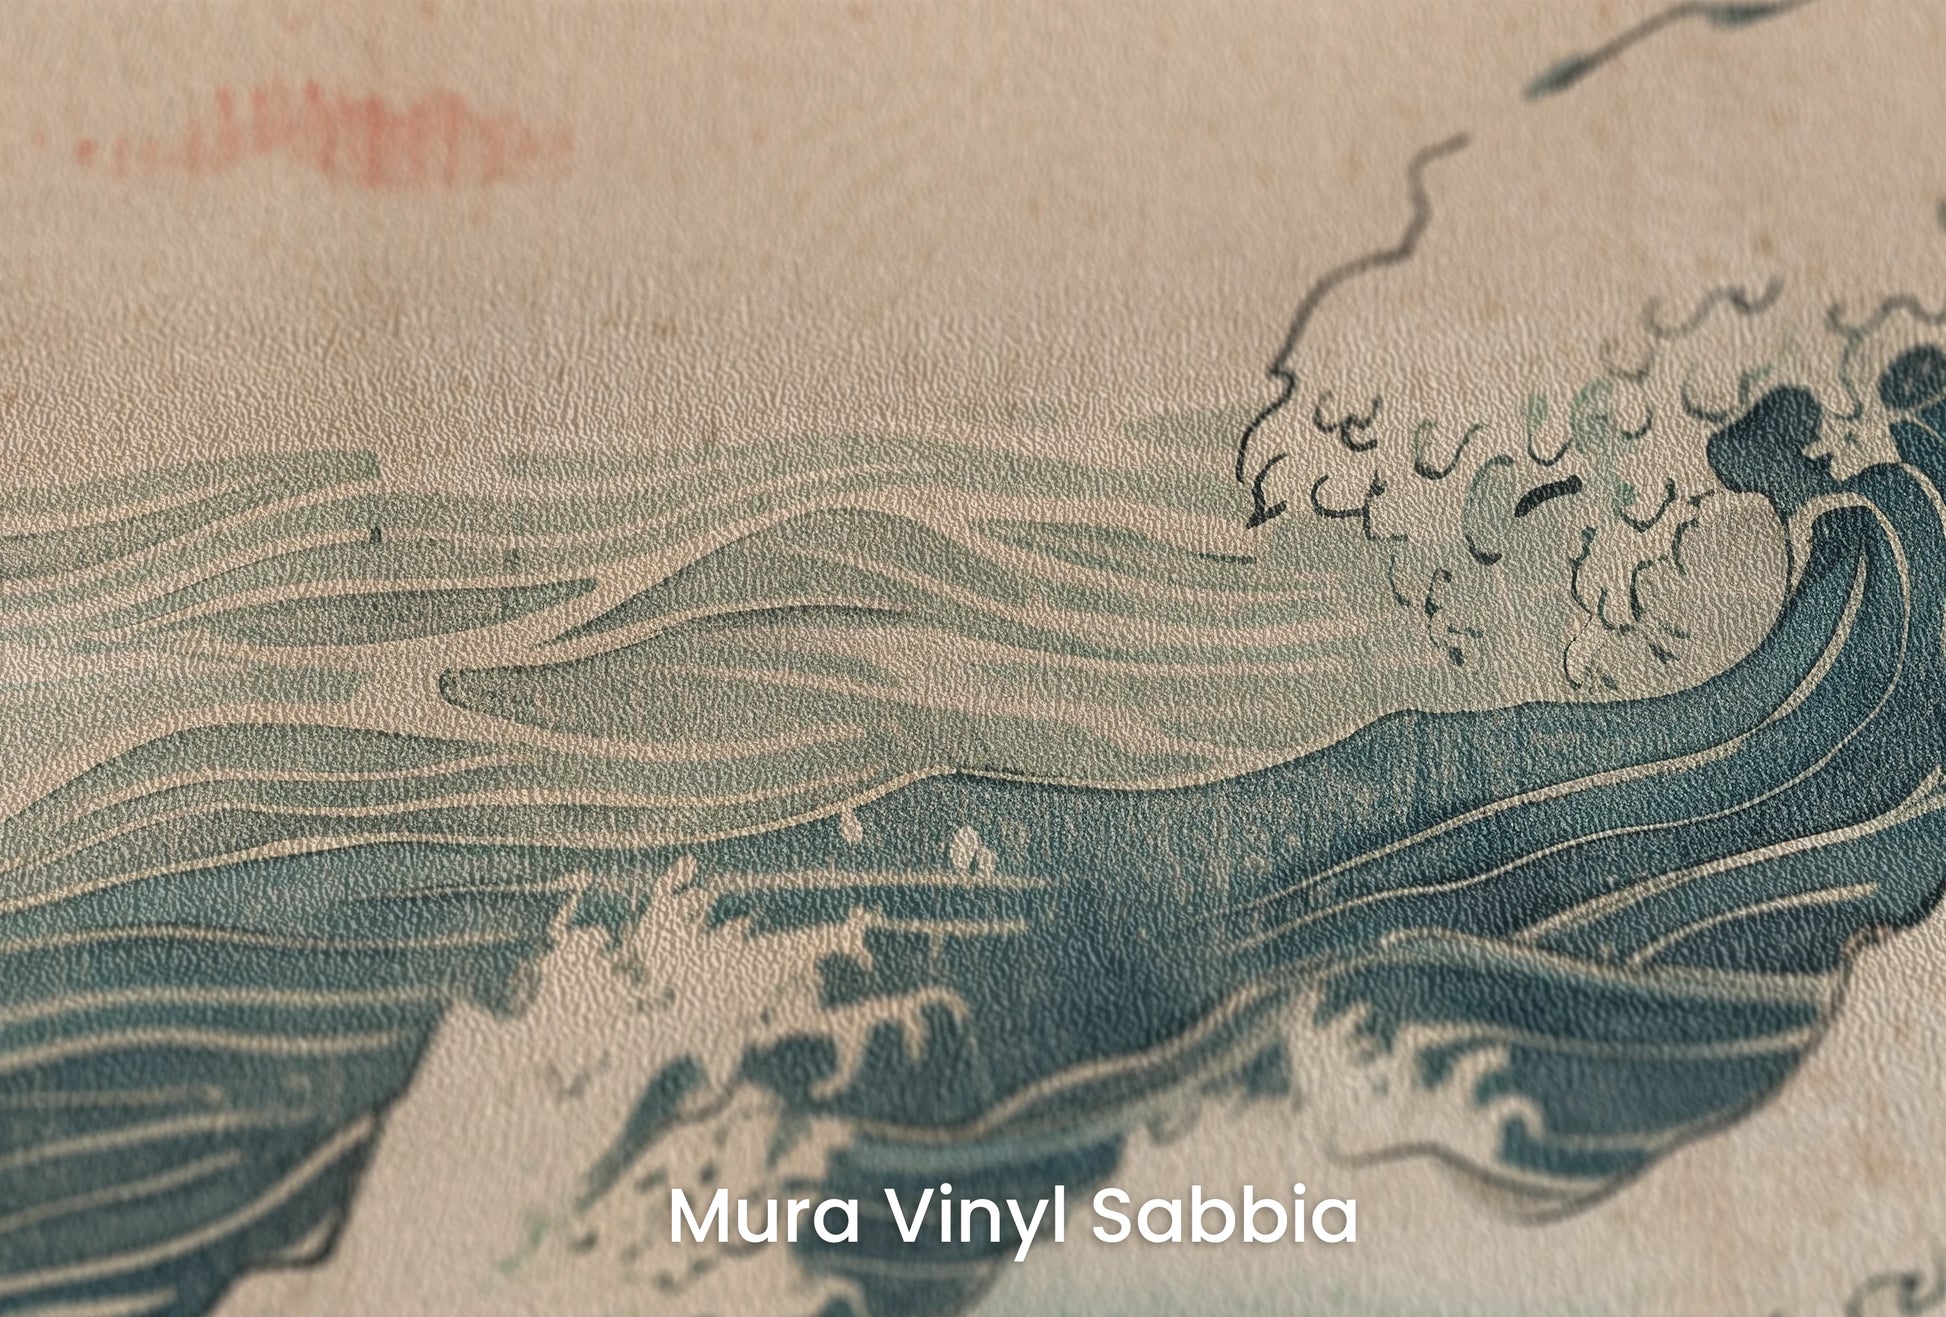 Zbliżenie na artystyczną fototapetę o nazwie Edo's Sunrise na podłożu Mura Vinyl Sabbia struktura grubego ziarna piasku.